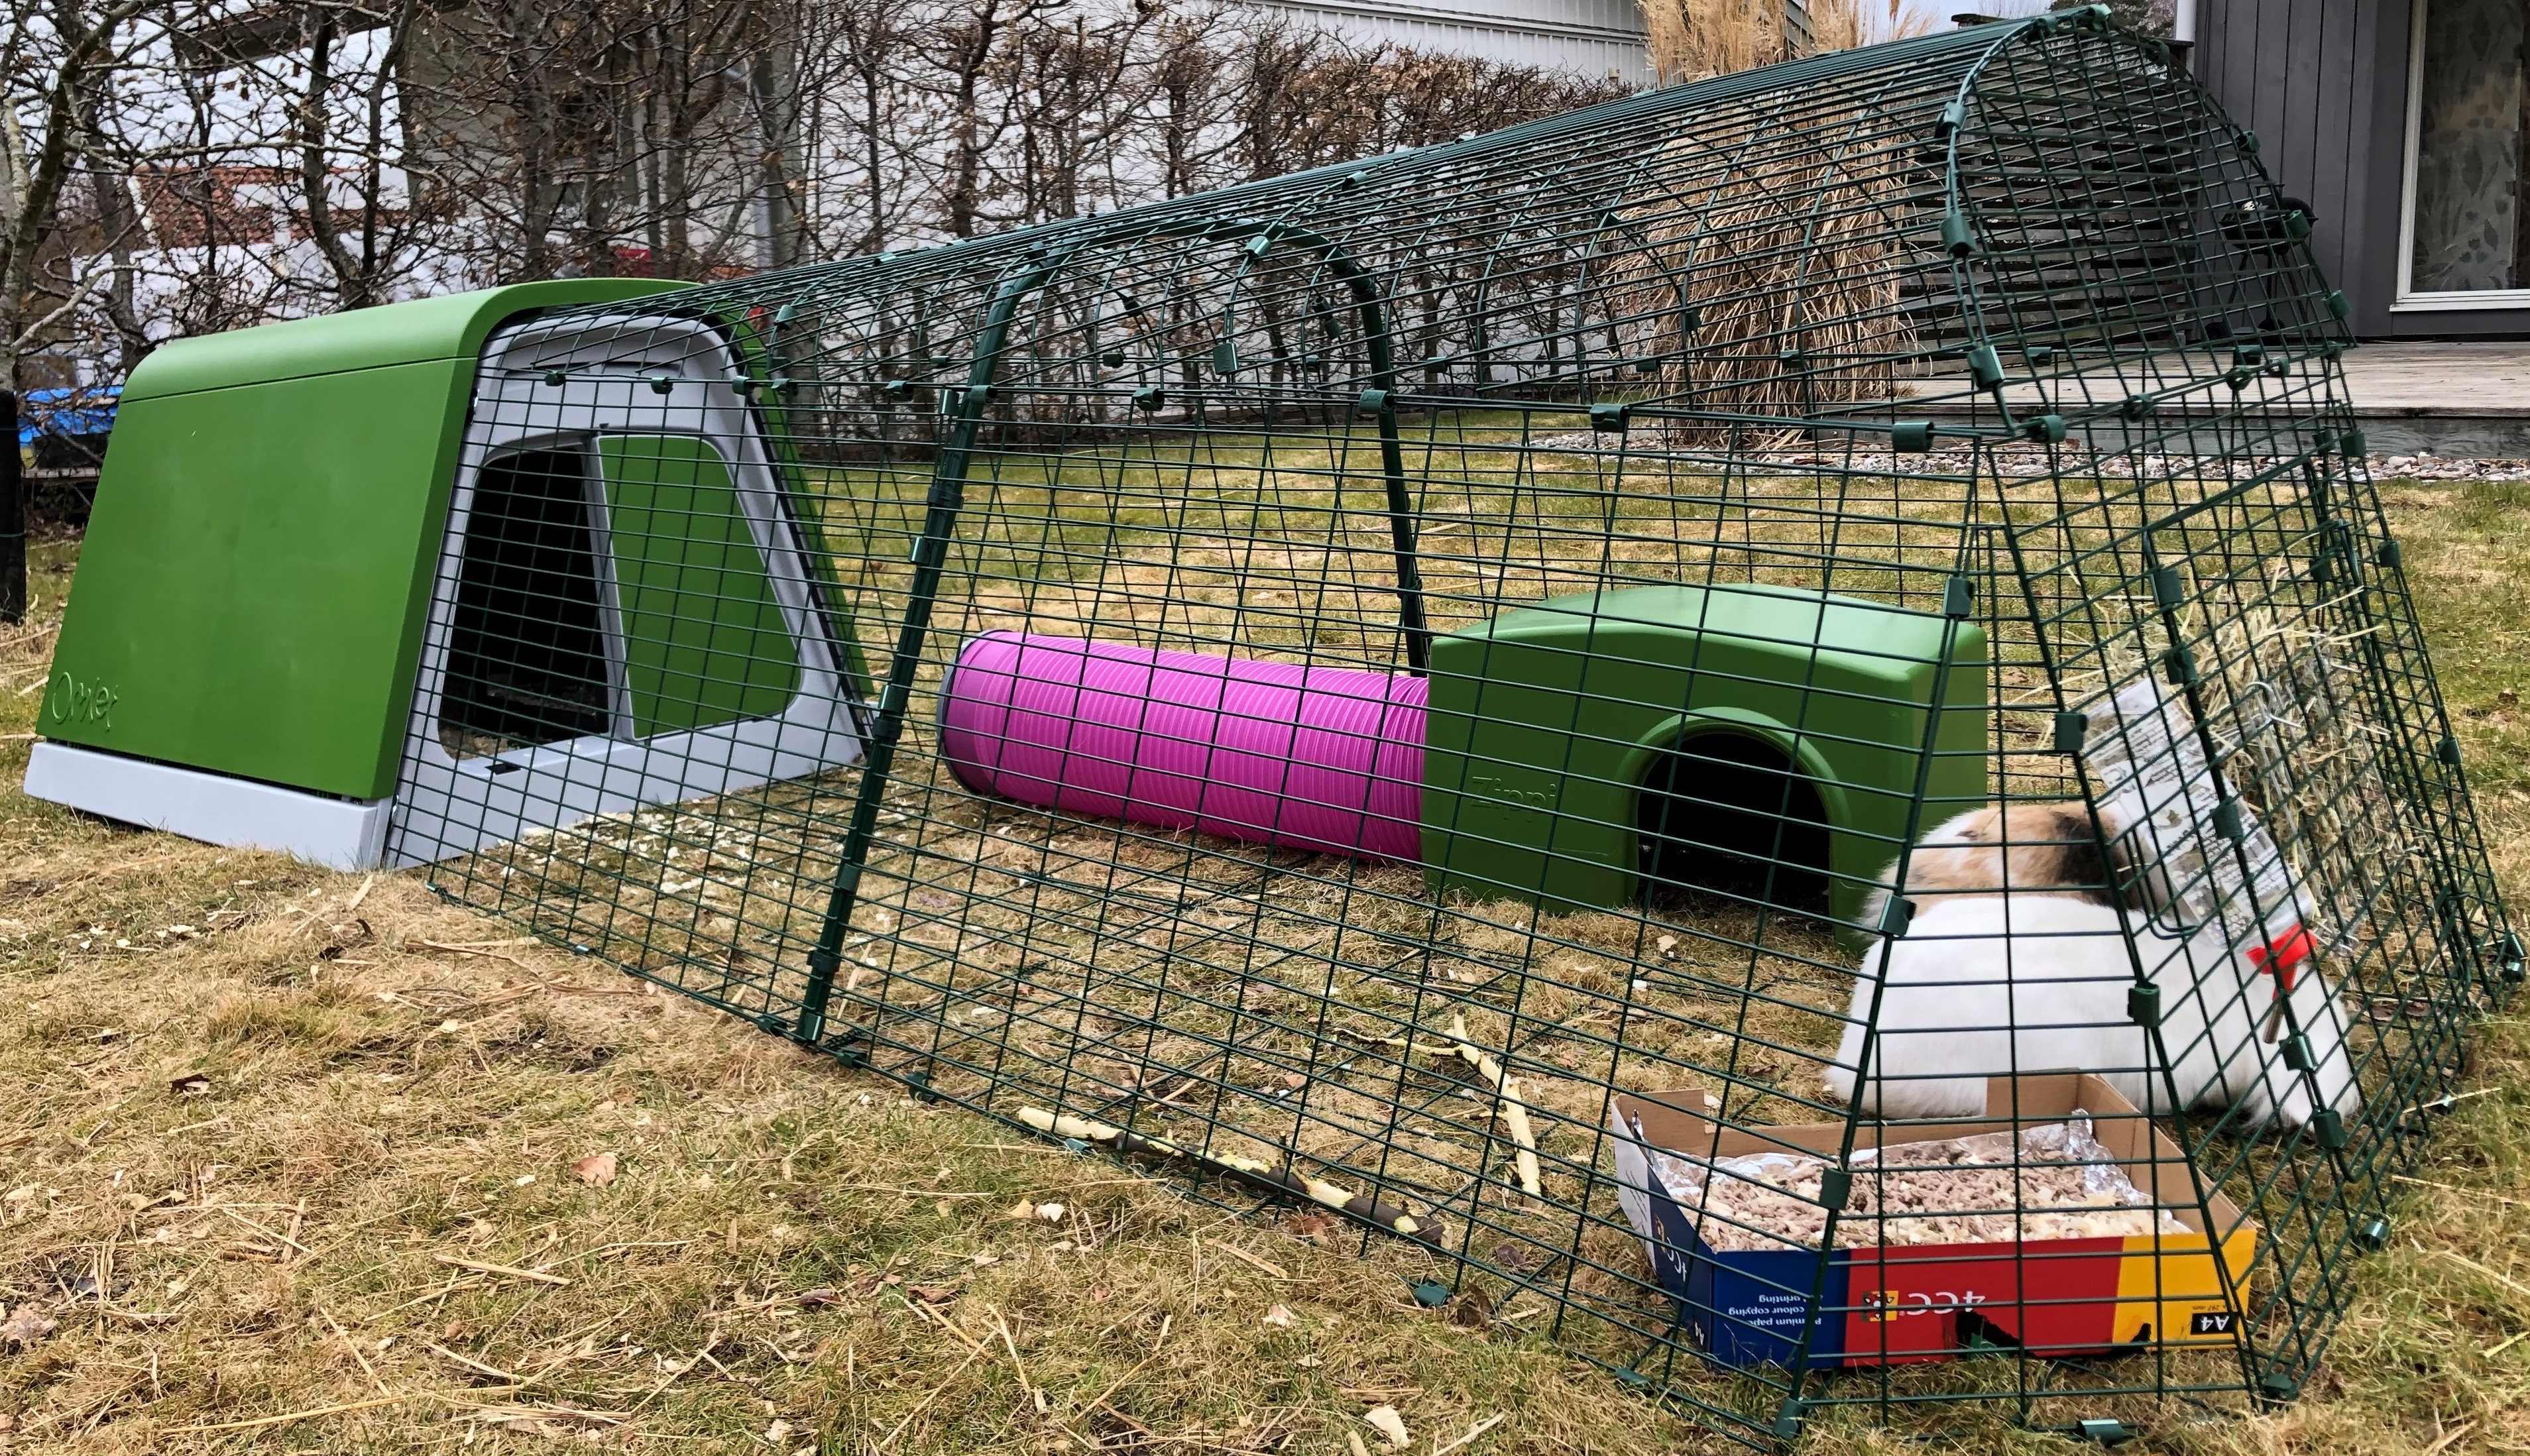 Omlet Eglu kaninchenstall mit auslauf, grünem Zippi unterstand, rosa Zippi tunnel und zwei kaninchen